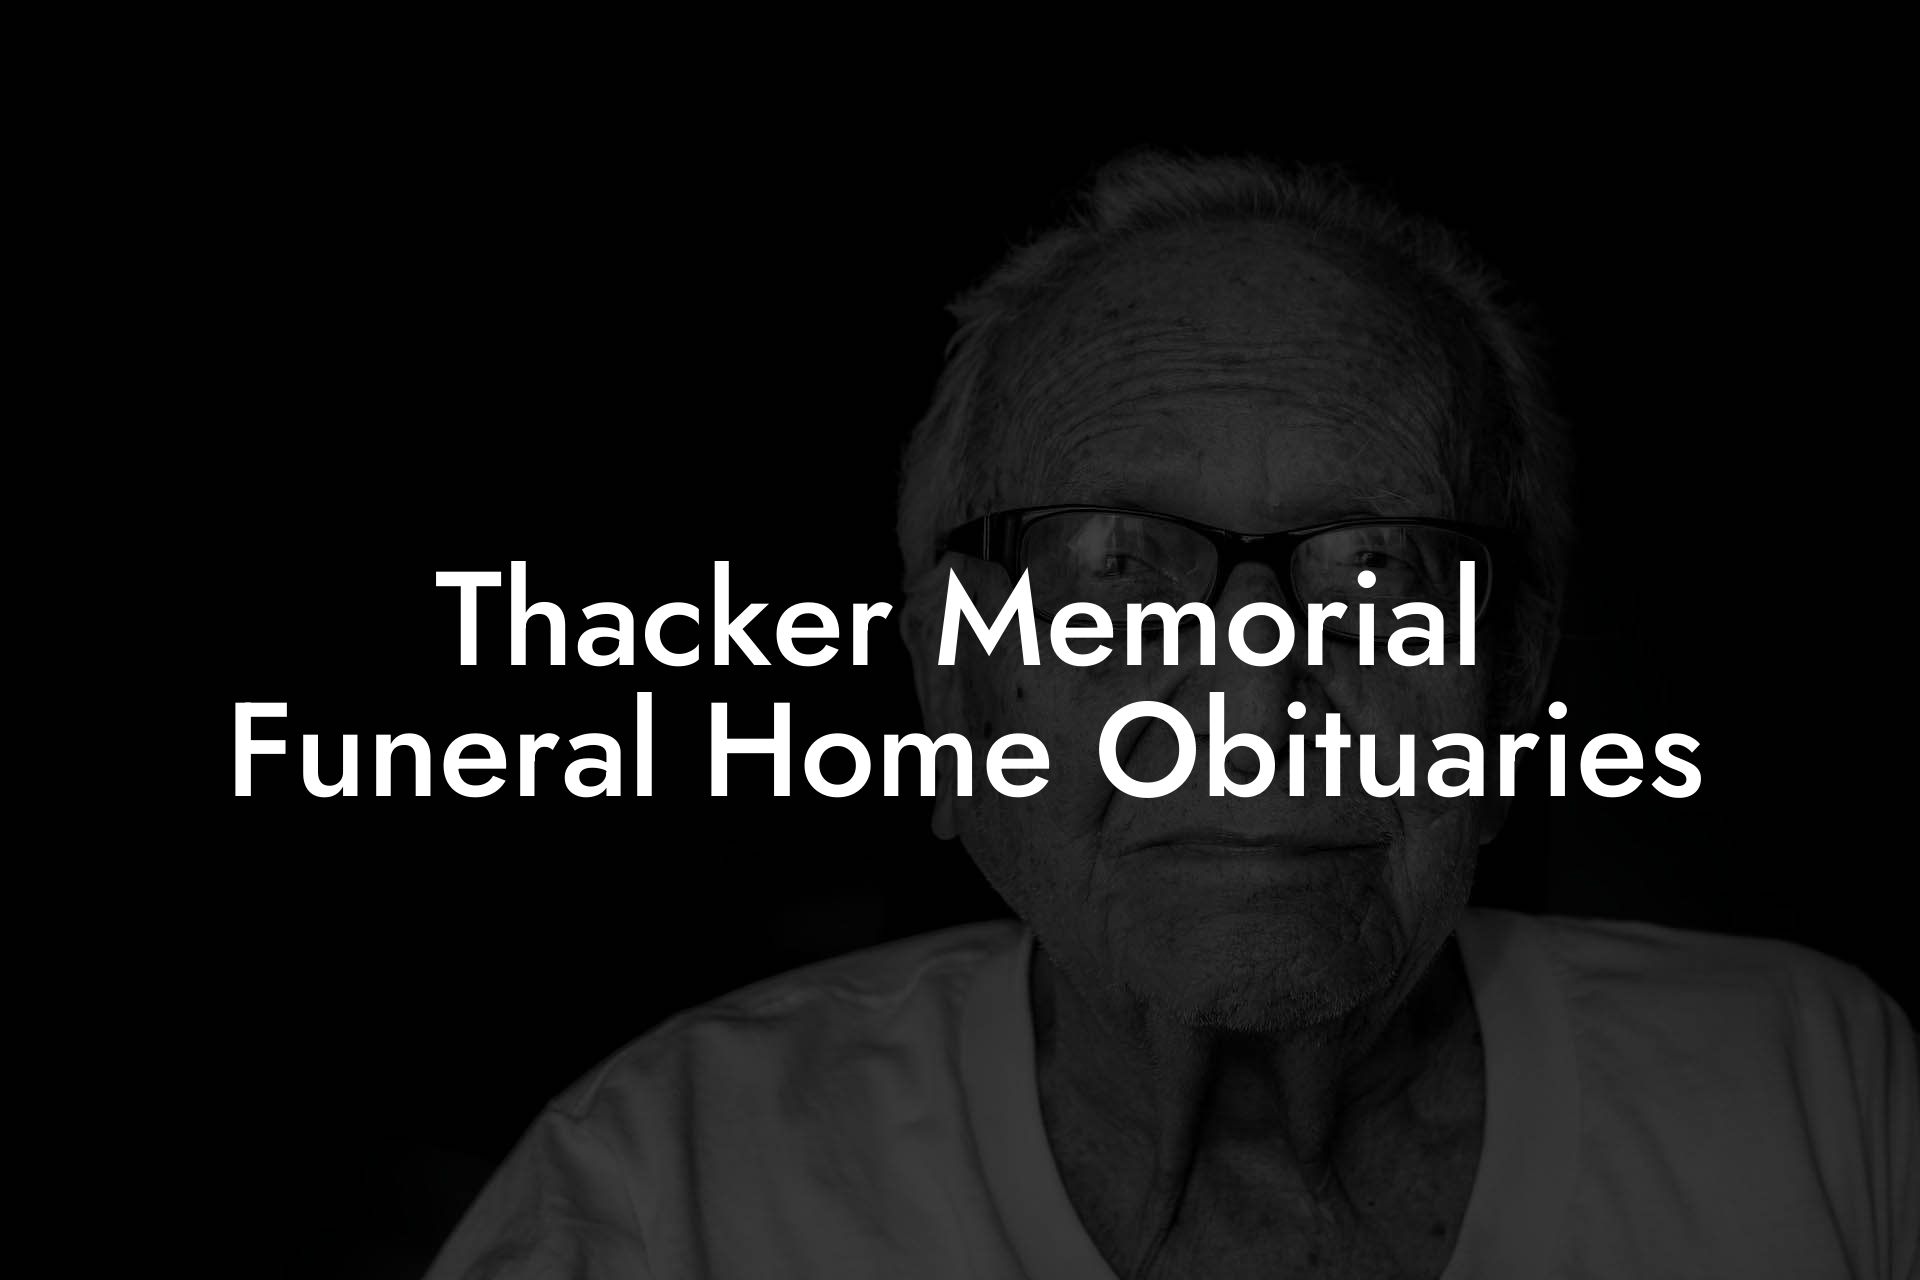 Thacker Memorial Funeral Home Obituaries